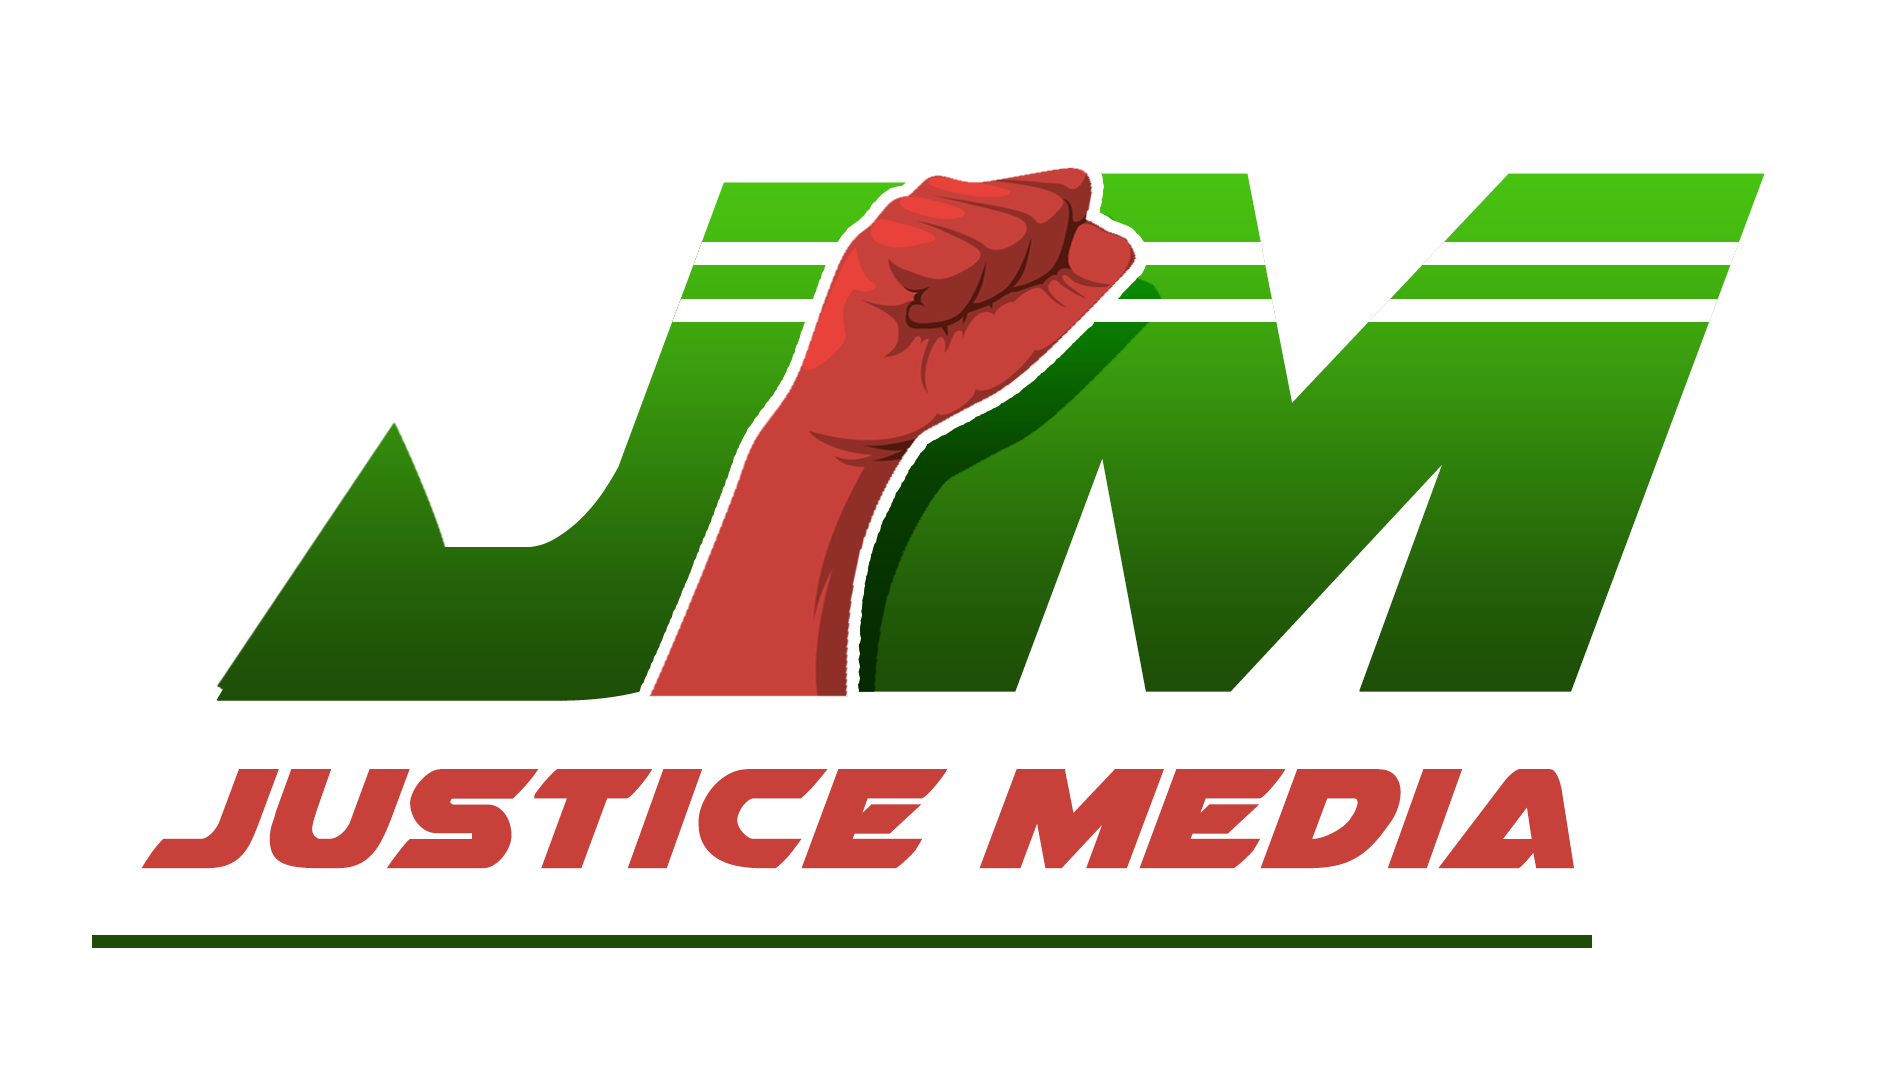 Justice media